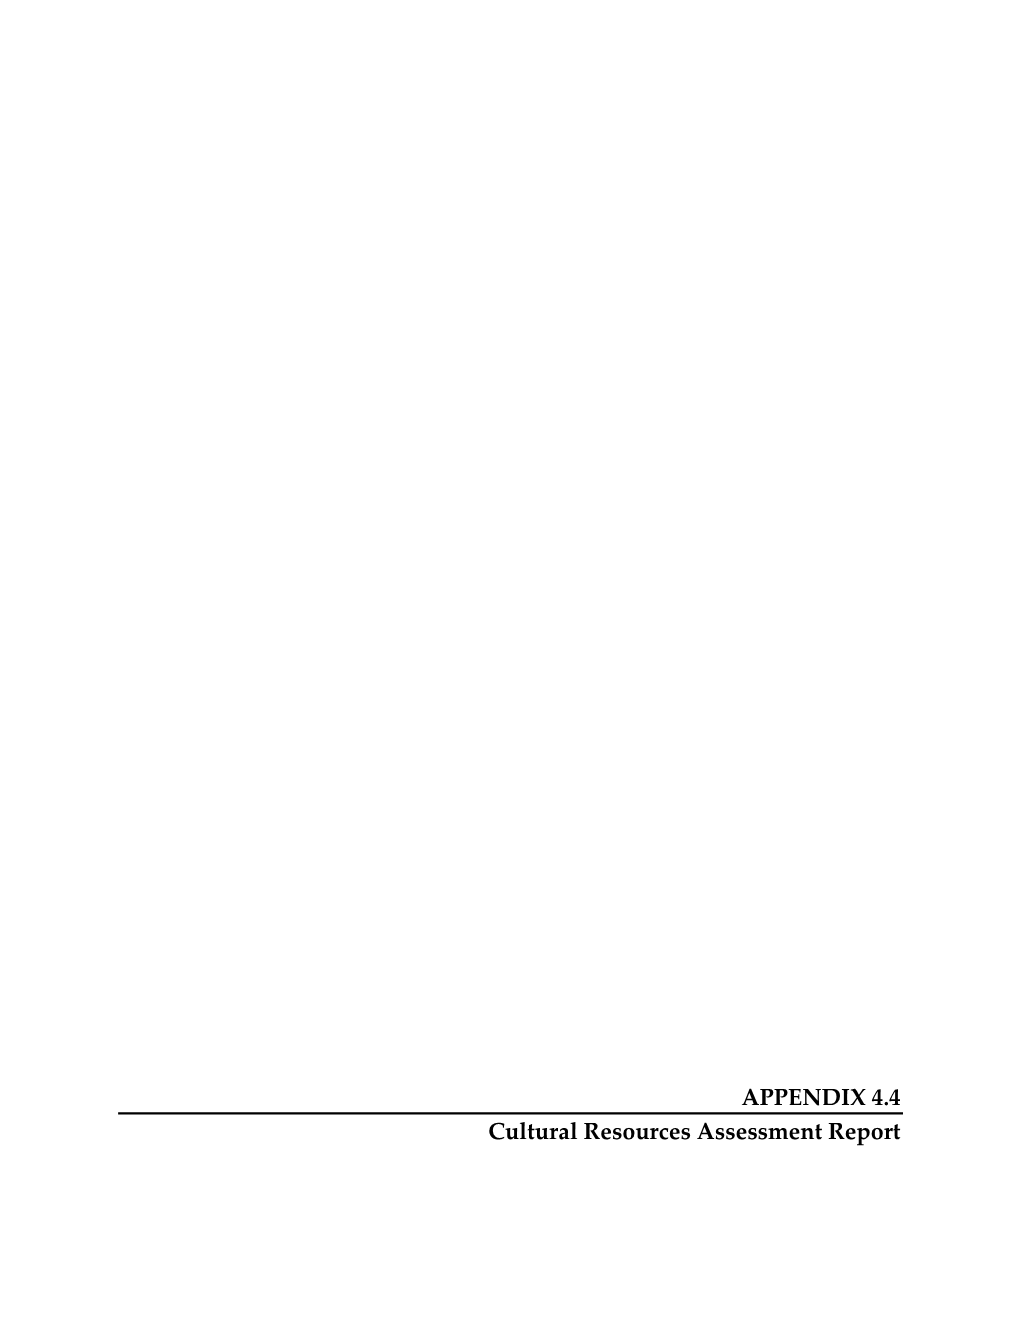 APPENDIX 4.4 Cultural Resources Assessment Report CULTURAL RESOURCES ASSESSMENT REPORT